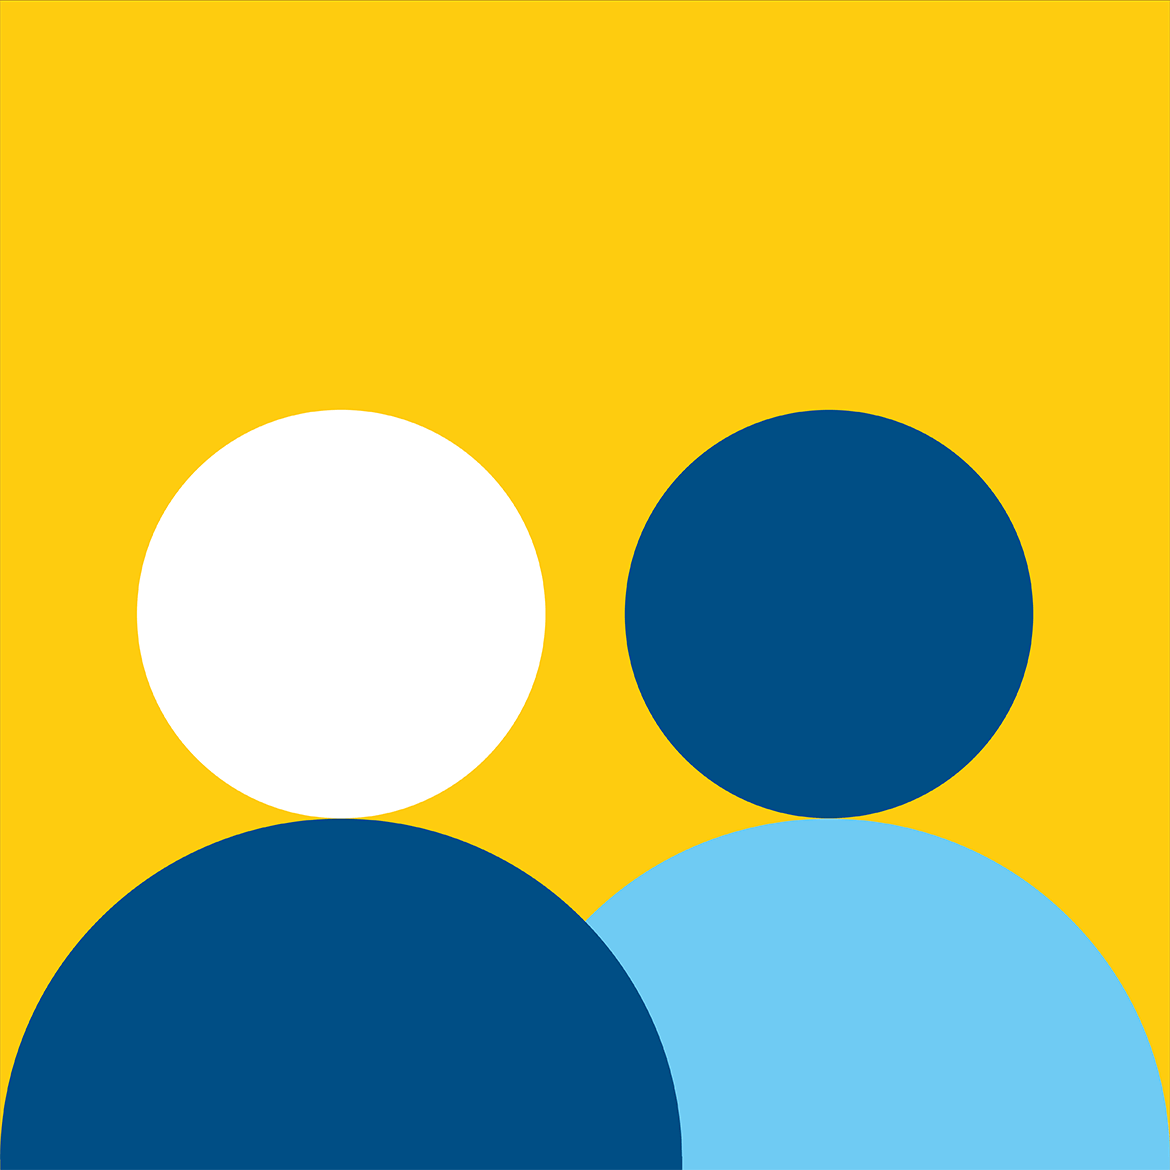 Zwei stilisierte Personen vor gelbem Hintergrund